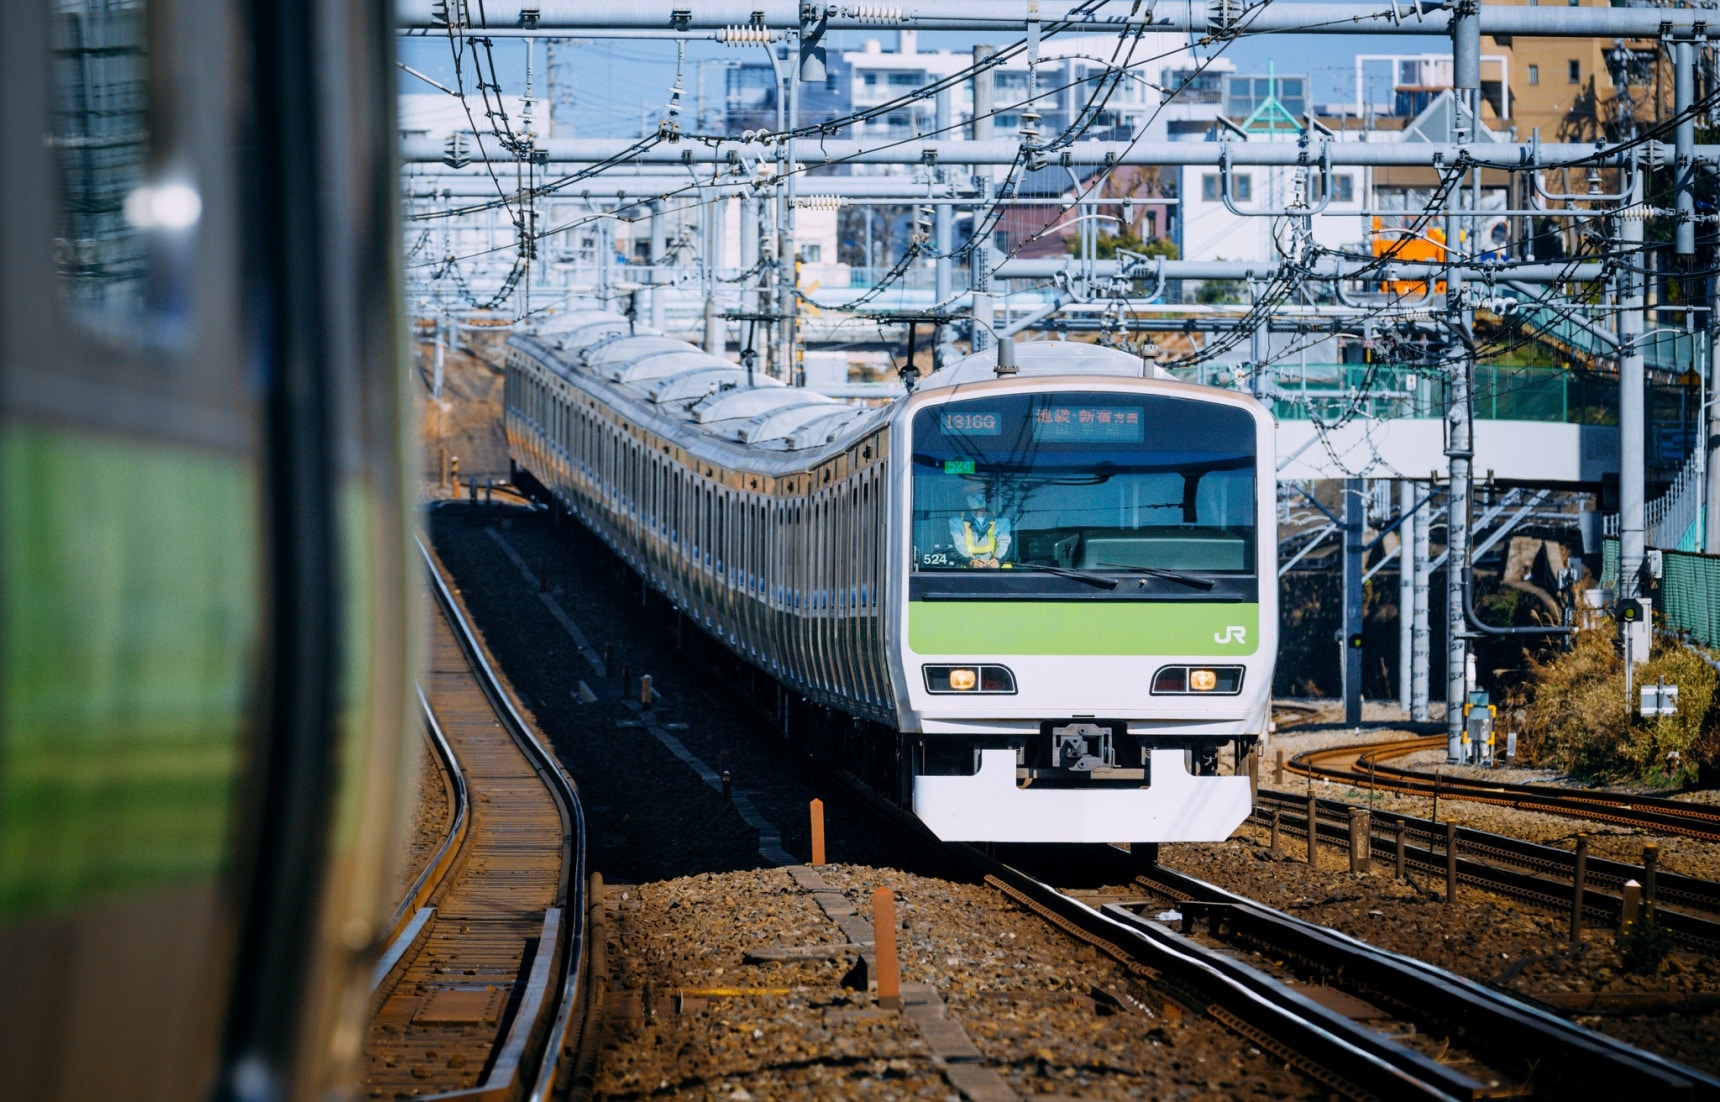 6 พาสรถไฟแนะนำสำหรับเที่ยวโตเกียว